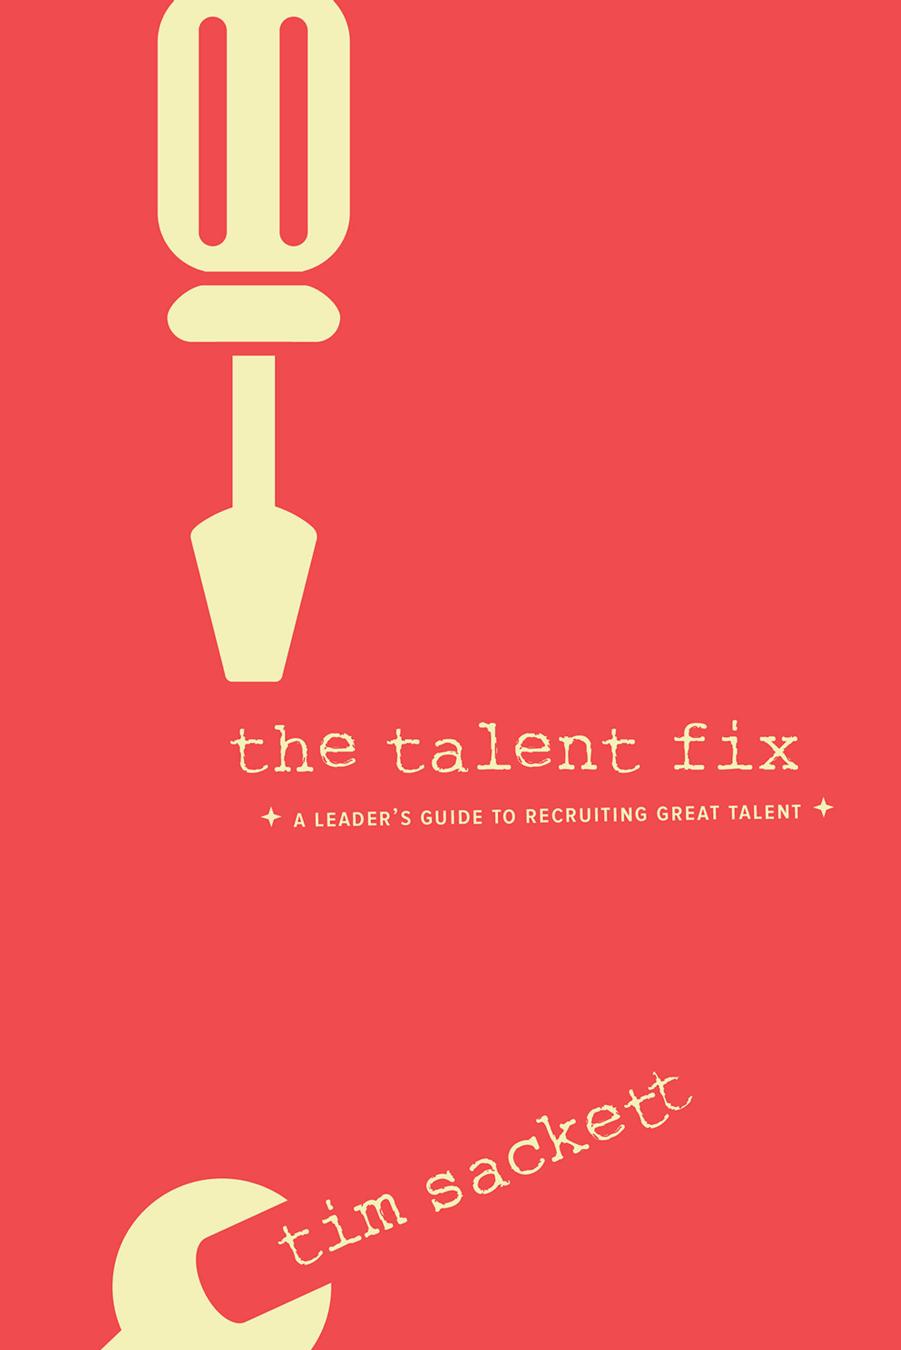 The Talent Fix by Tim Sackett